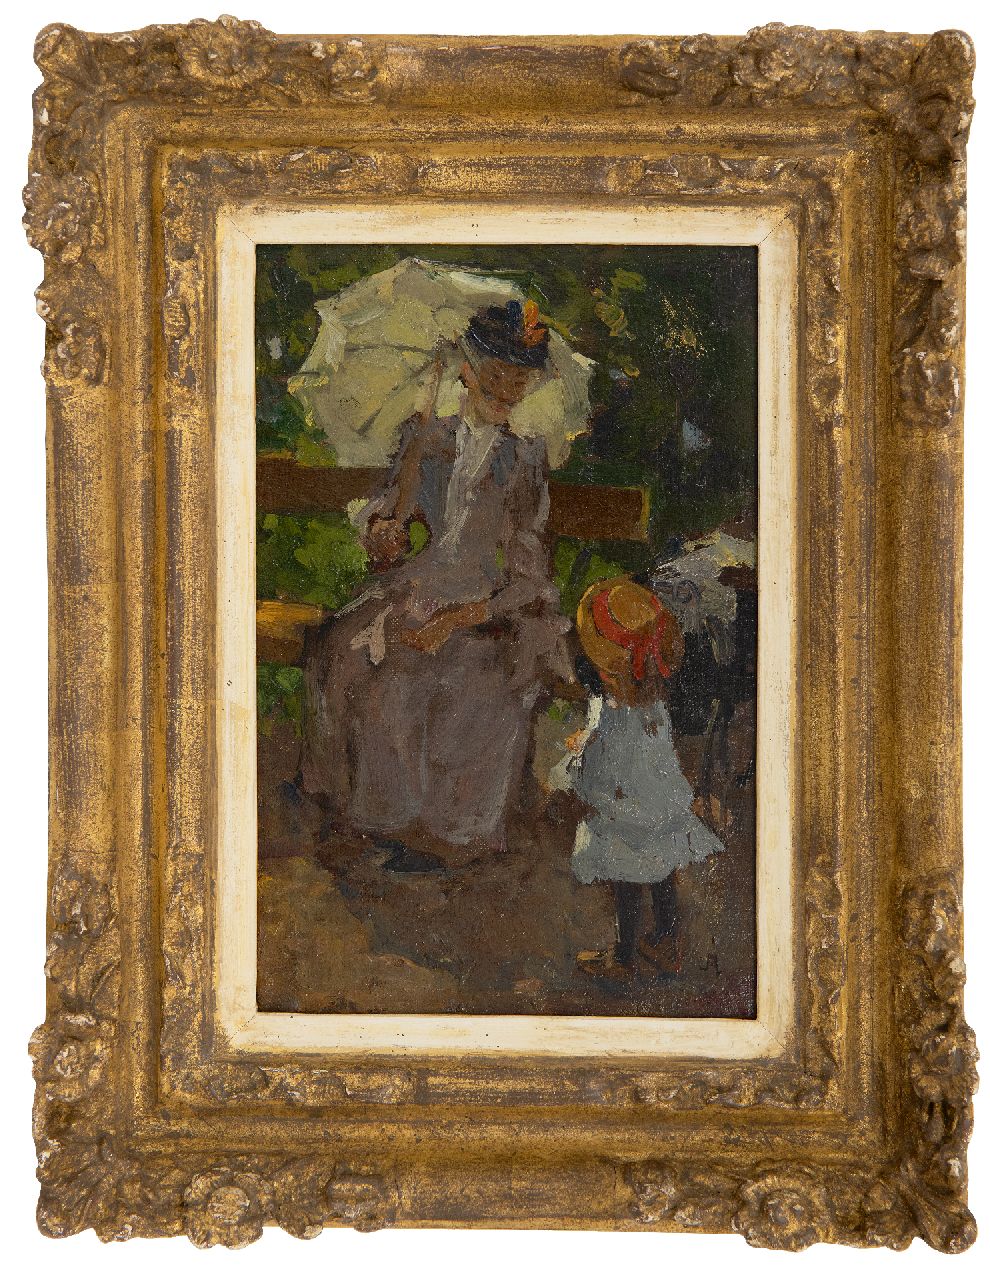 Akkeringa J.E.H.  | 'Johannes Evert' Hendrik Akkeringa | Schilderijen te koop aangeboden | In het park, olieverf op doek op paneel 19,2 x 12,7 cm, gesigneerd rechtsonder met initiaal